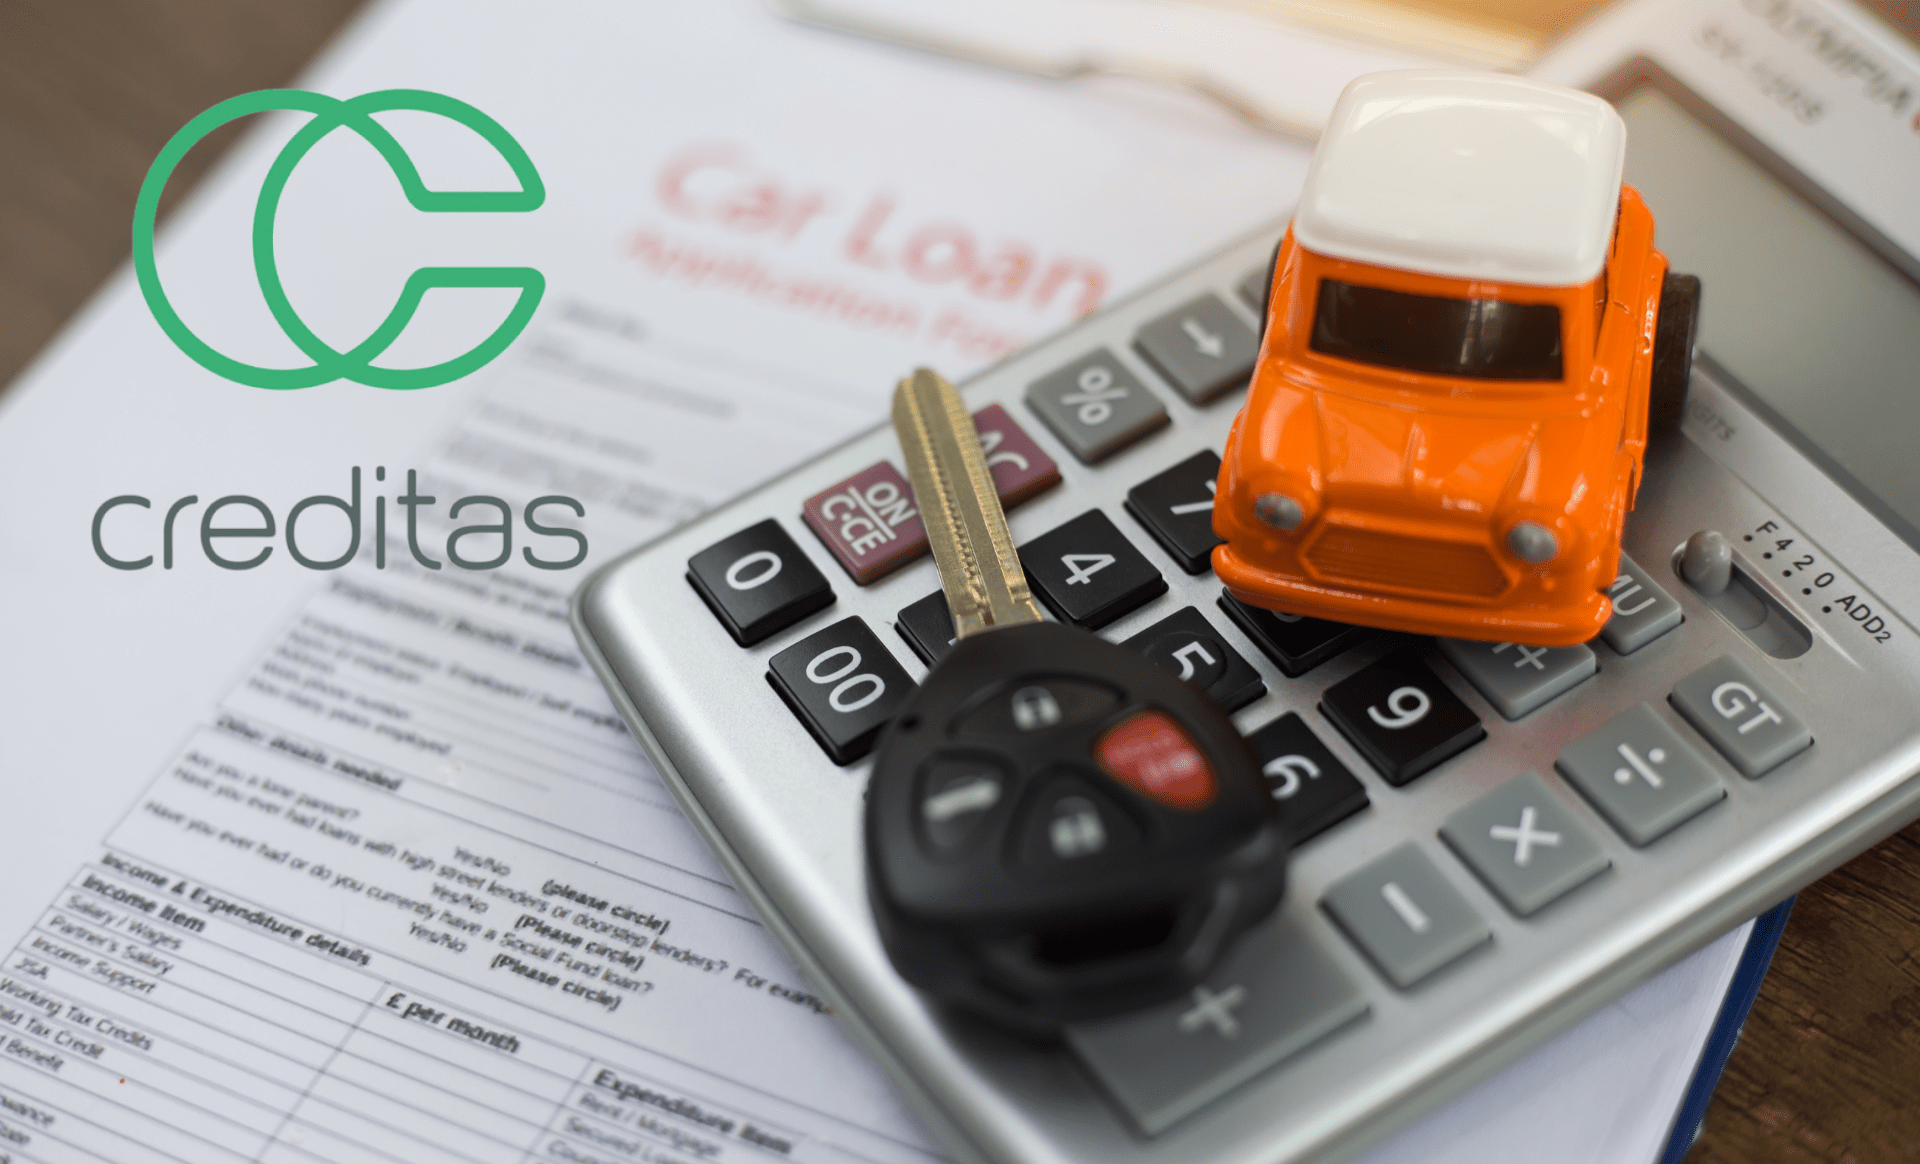 Creditas Auto: a solução para financiar seu carro com facilidade e segurança no Rio de Janeiro